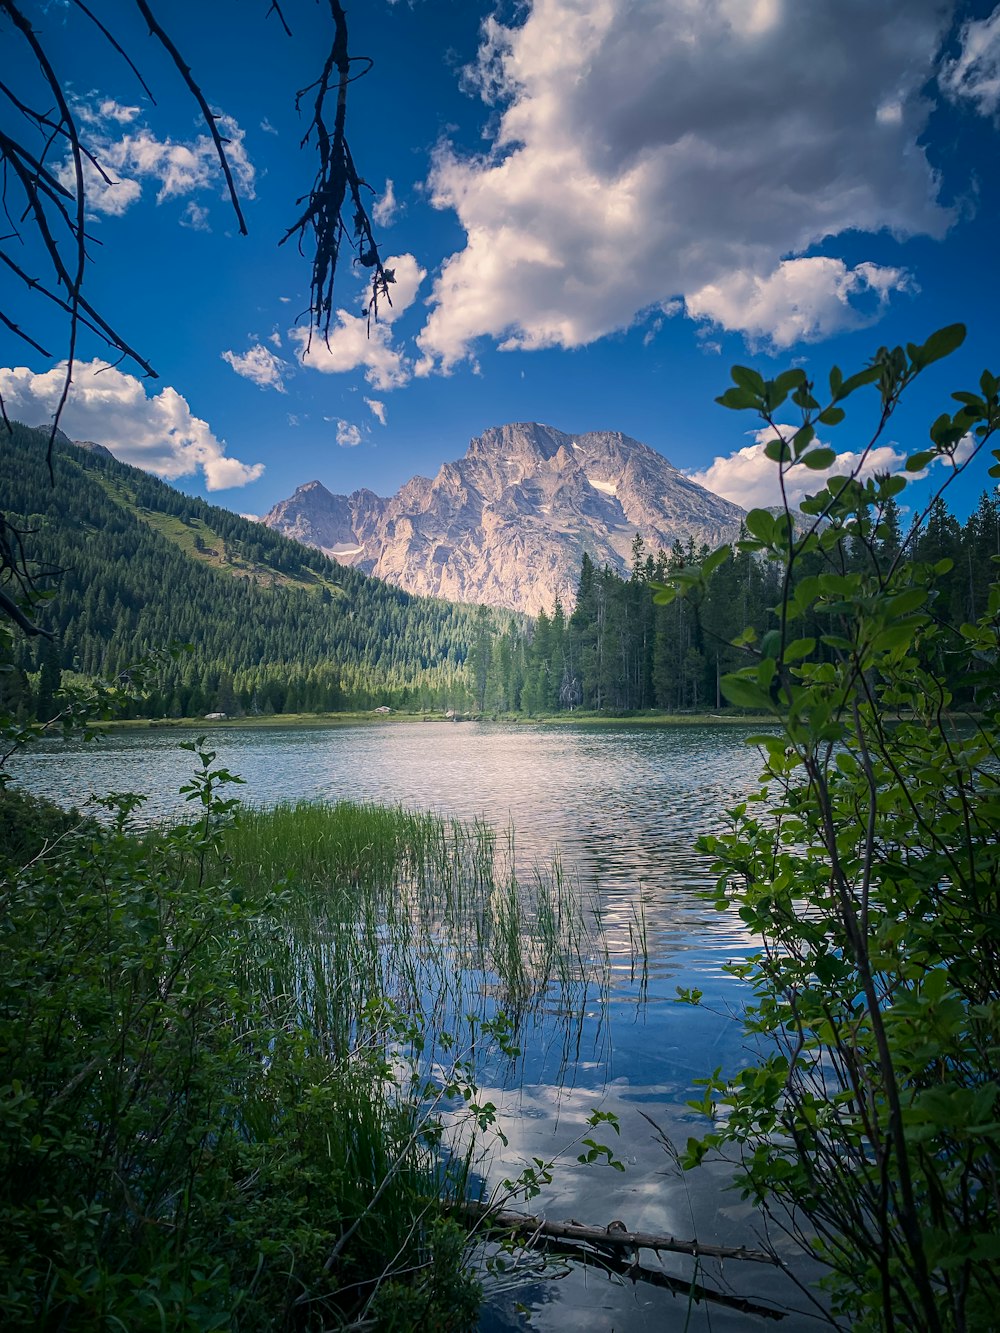 um lago cercado por árvores e montanhas sob um céu azul nublado